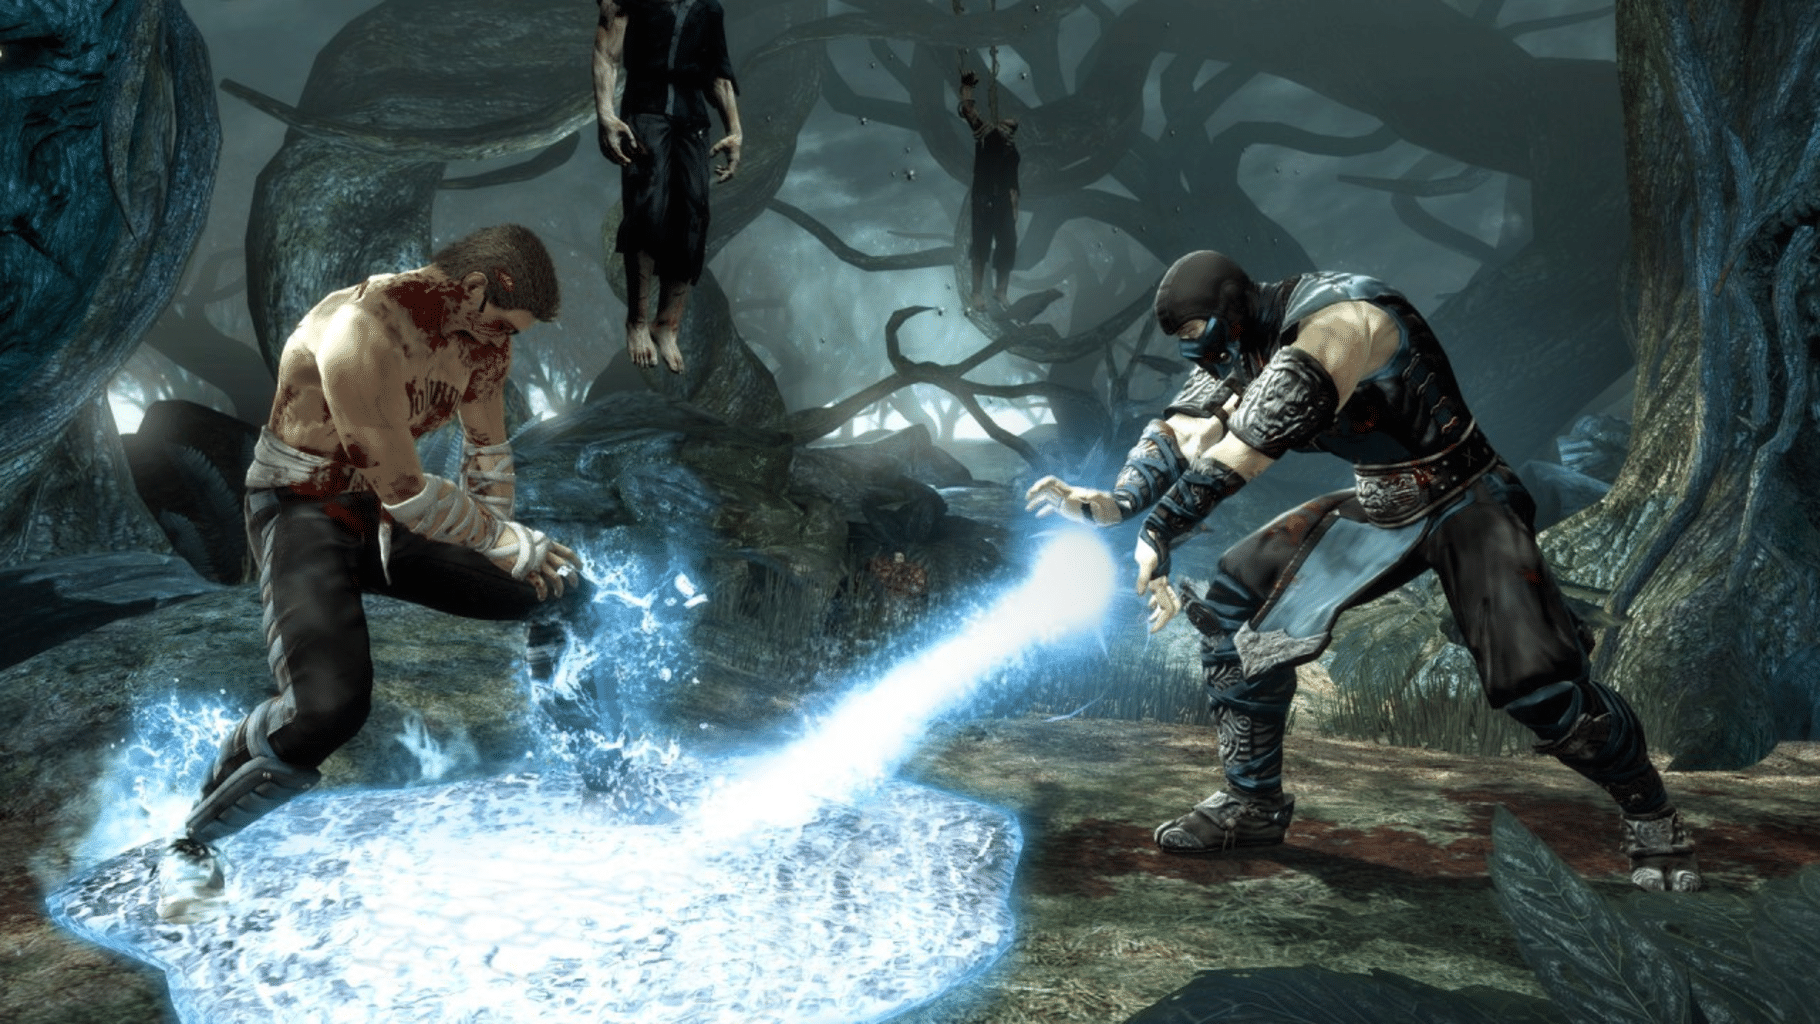 Mortal Kombat screenshot